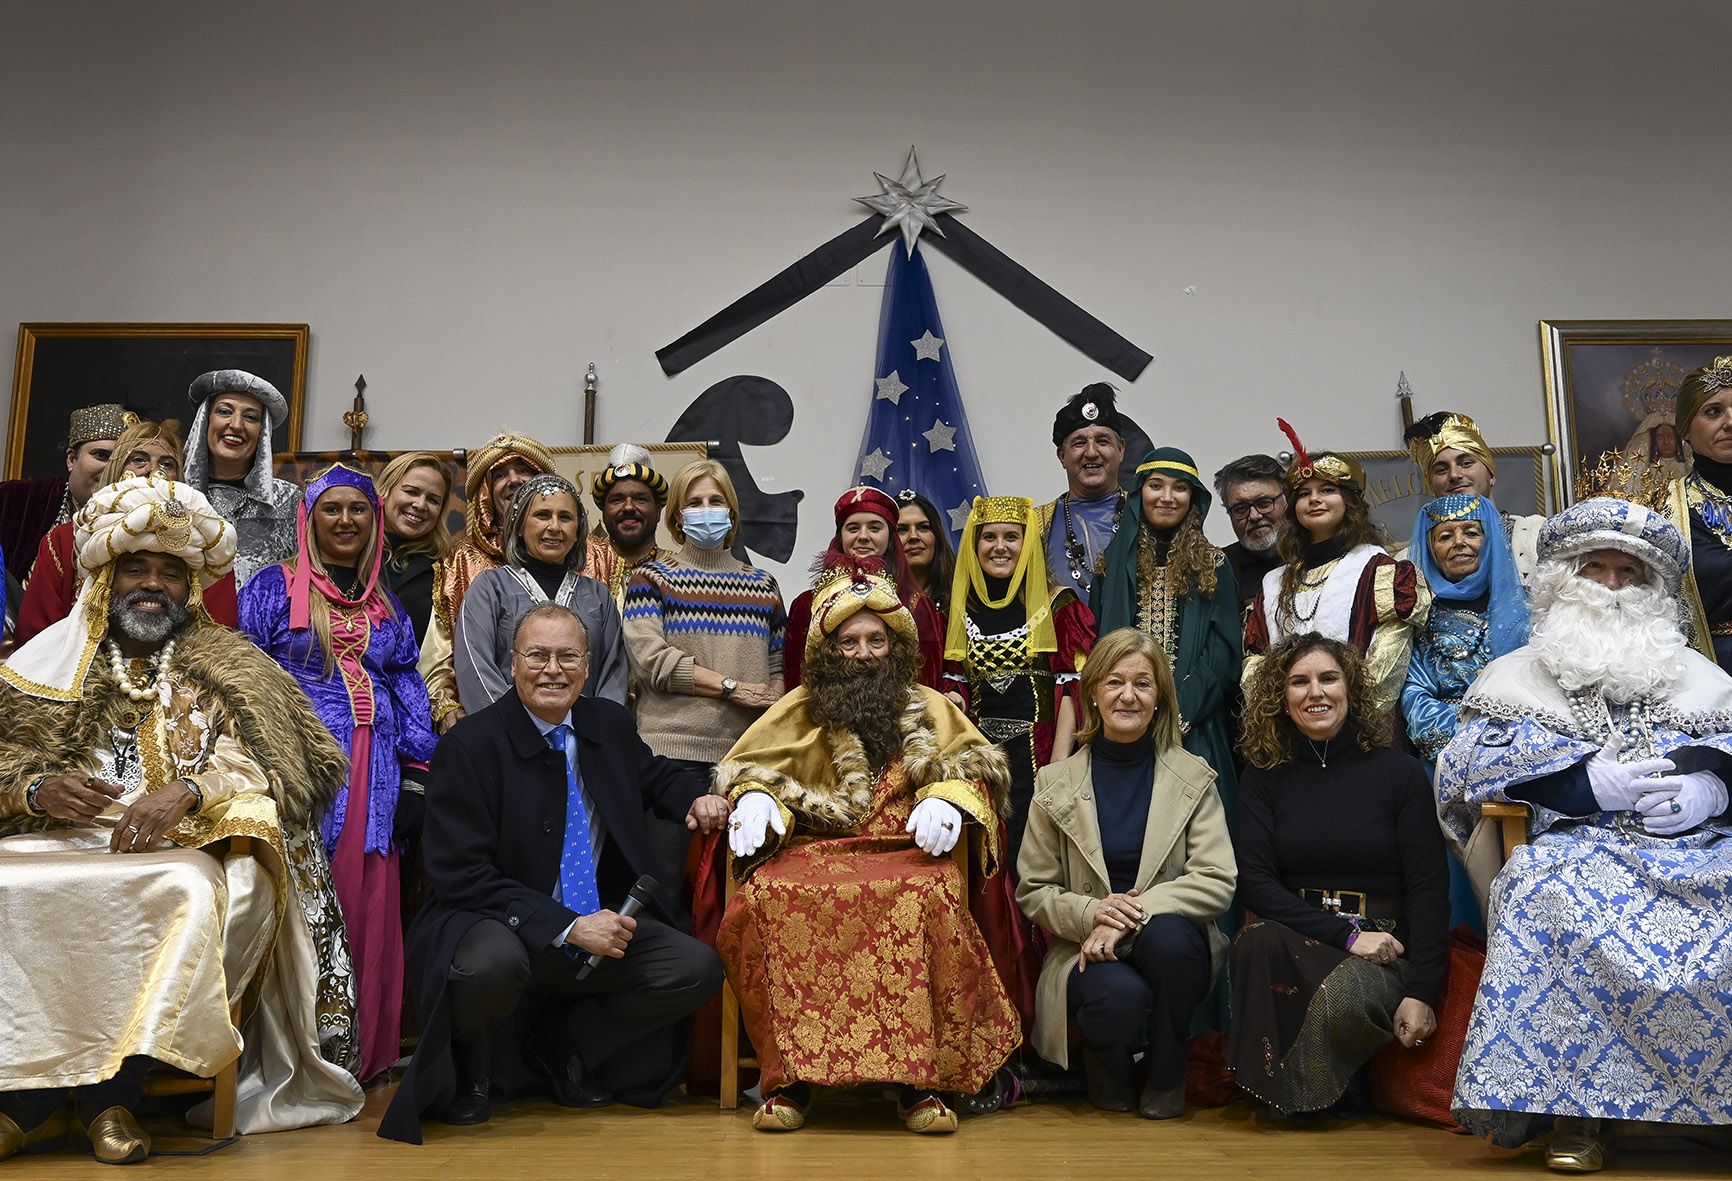 Los Reyes Magos rodeados por la alcaldesa, delegados, mayores y familiares.